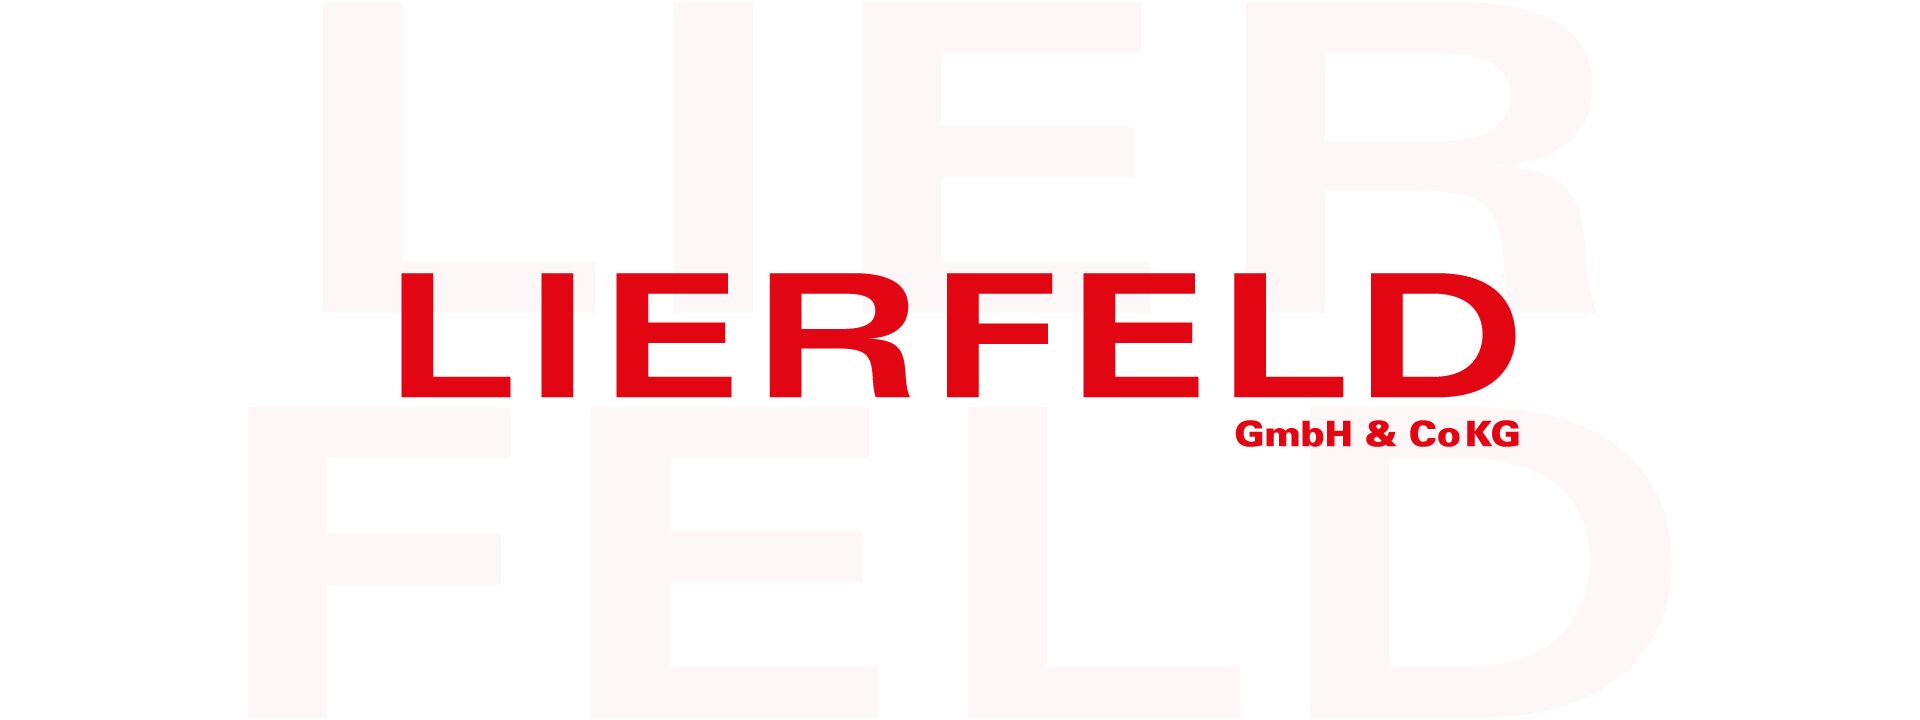 Details Lierfeld GmbH & Co. KG